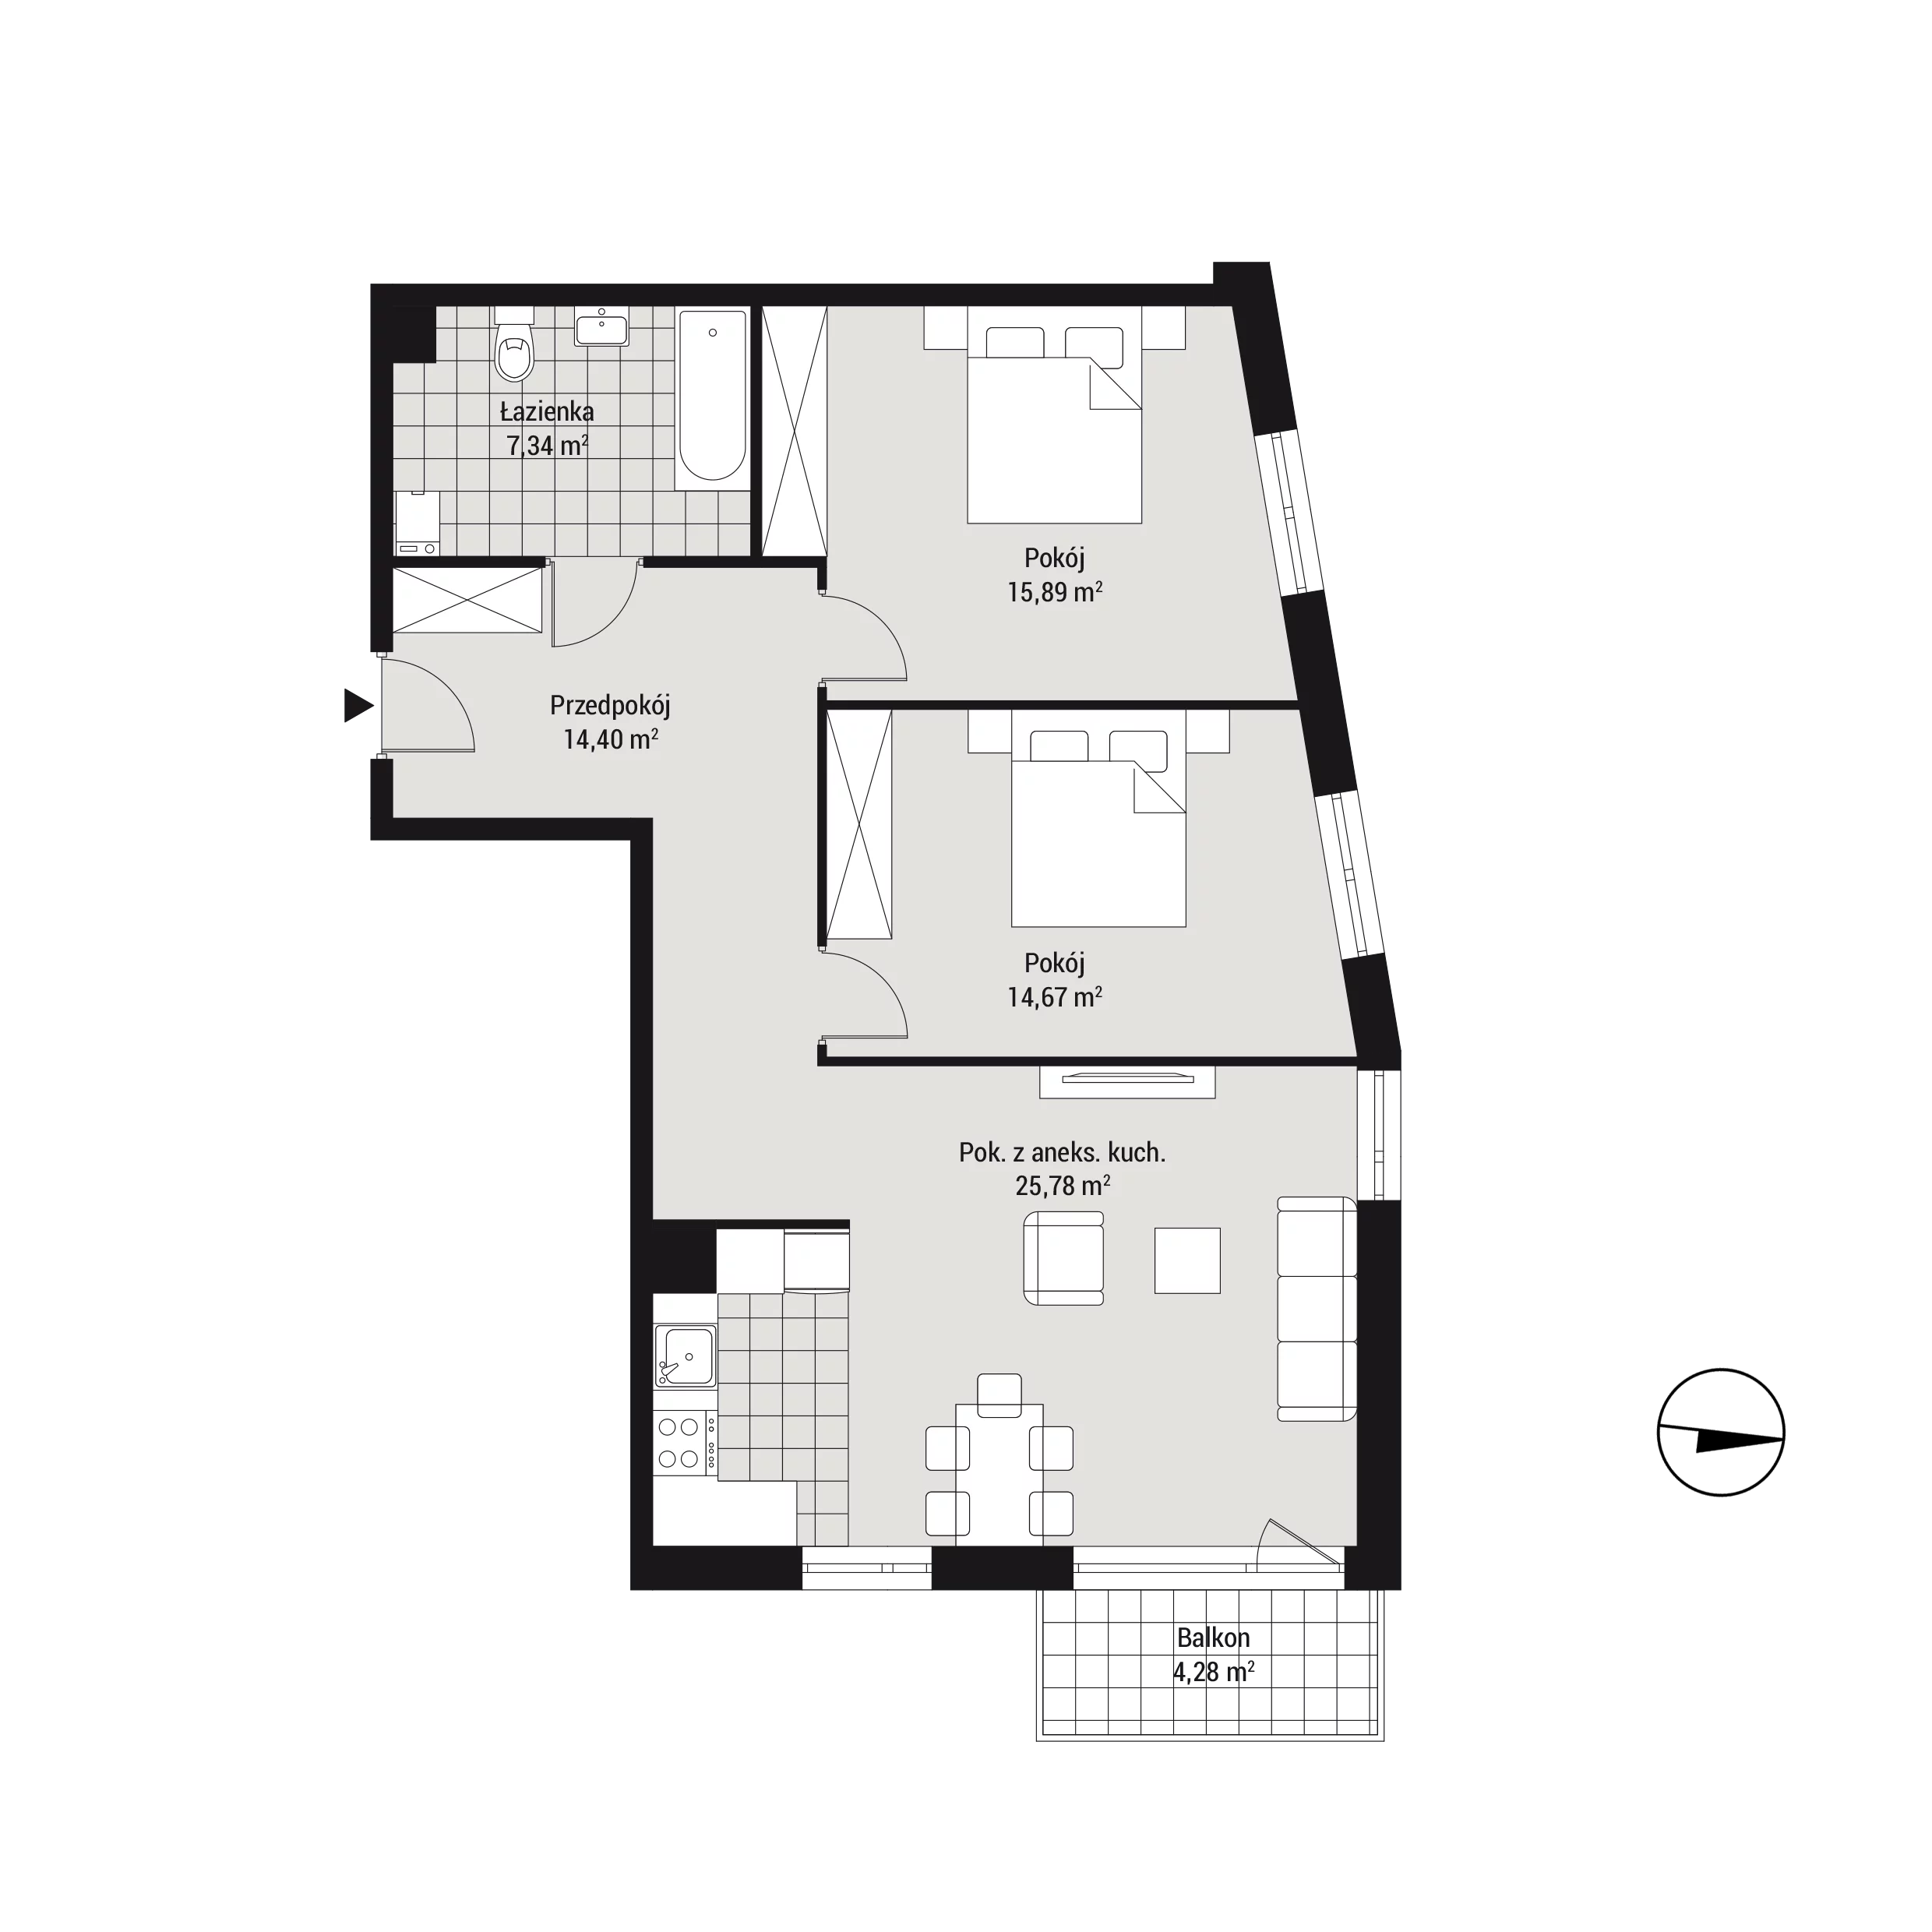 Mieszkanie 78,26 m², piętro 1, oferta nr mieszkanie C16, Na Koszutce, Katowice, Śródmieście, Koszutka, ul. Słoneczna 1